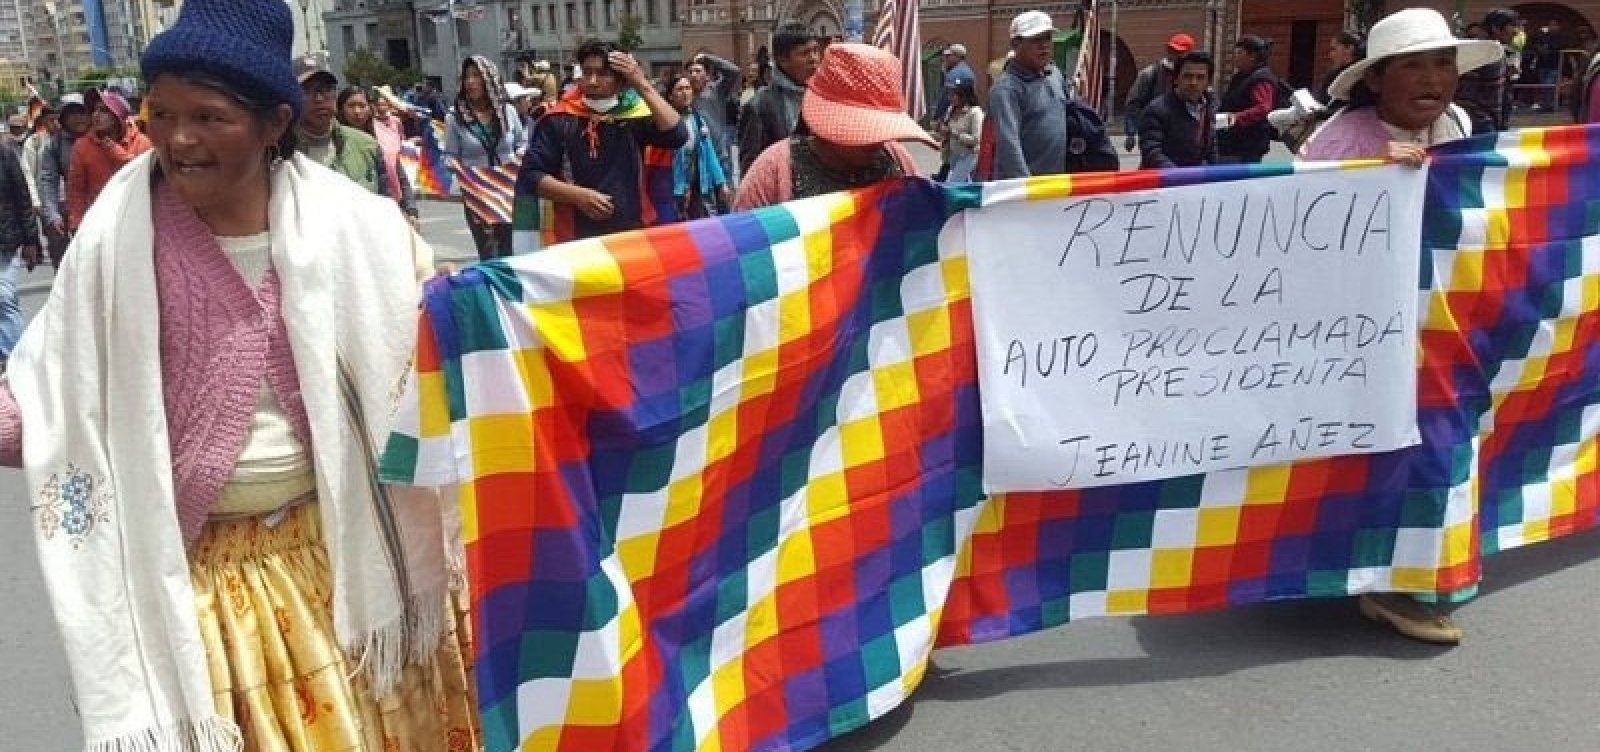 Cinco pessoas morrem em confronto entre policiais e manifestantes na Bolívia